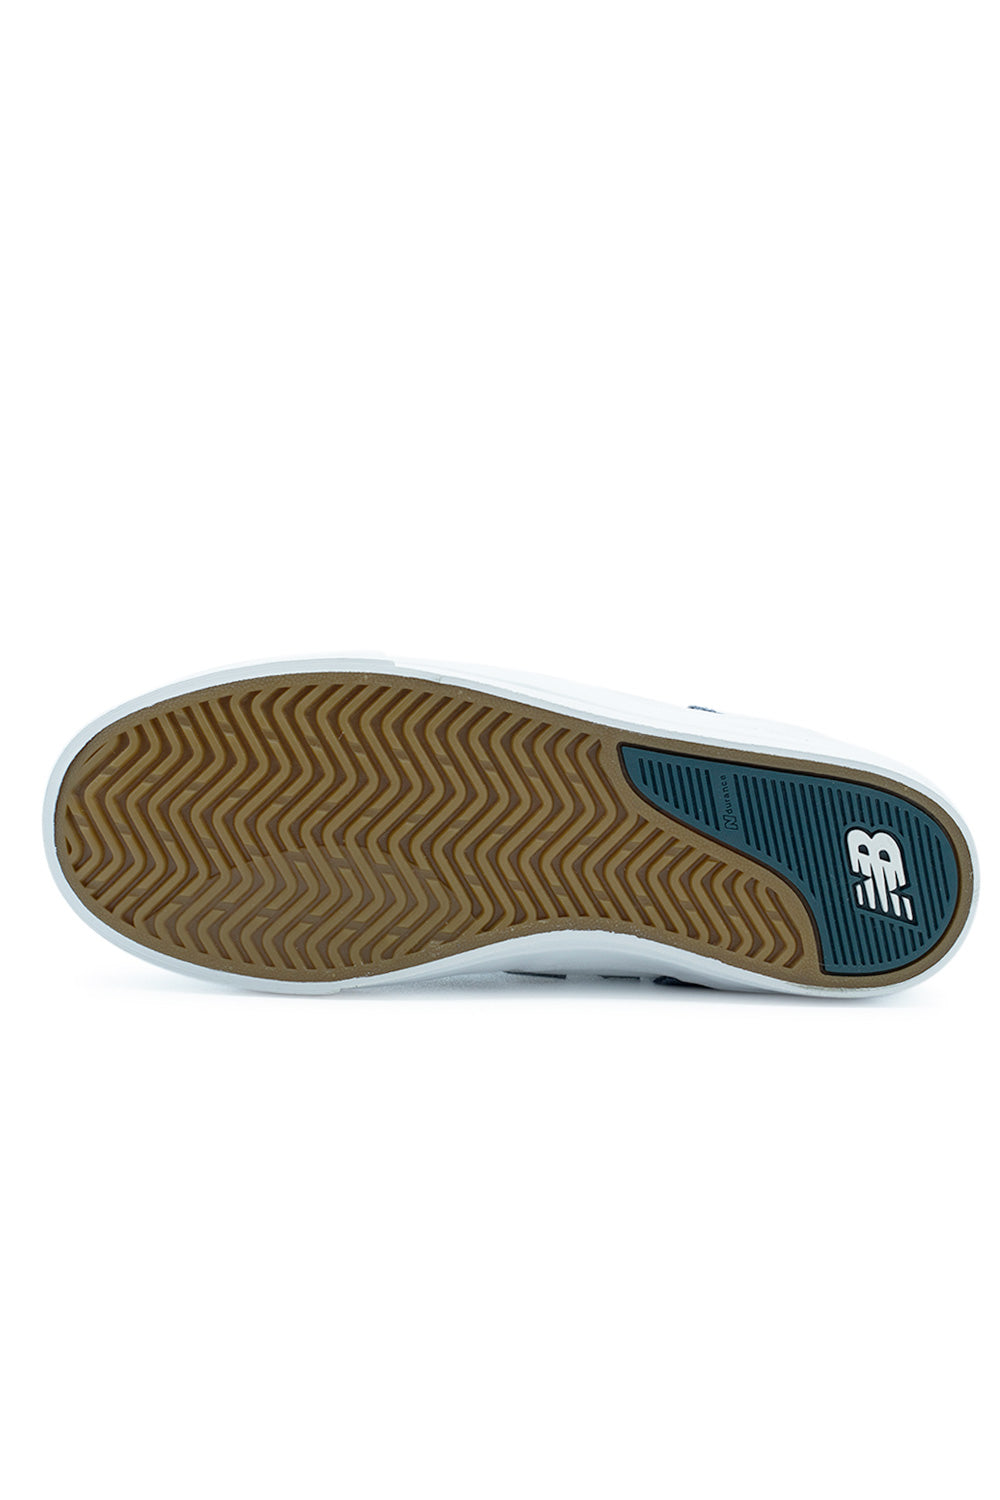 New Balance Numeric Jamie Foy 306 Shoe Indigo / White - BONKERS